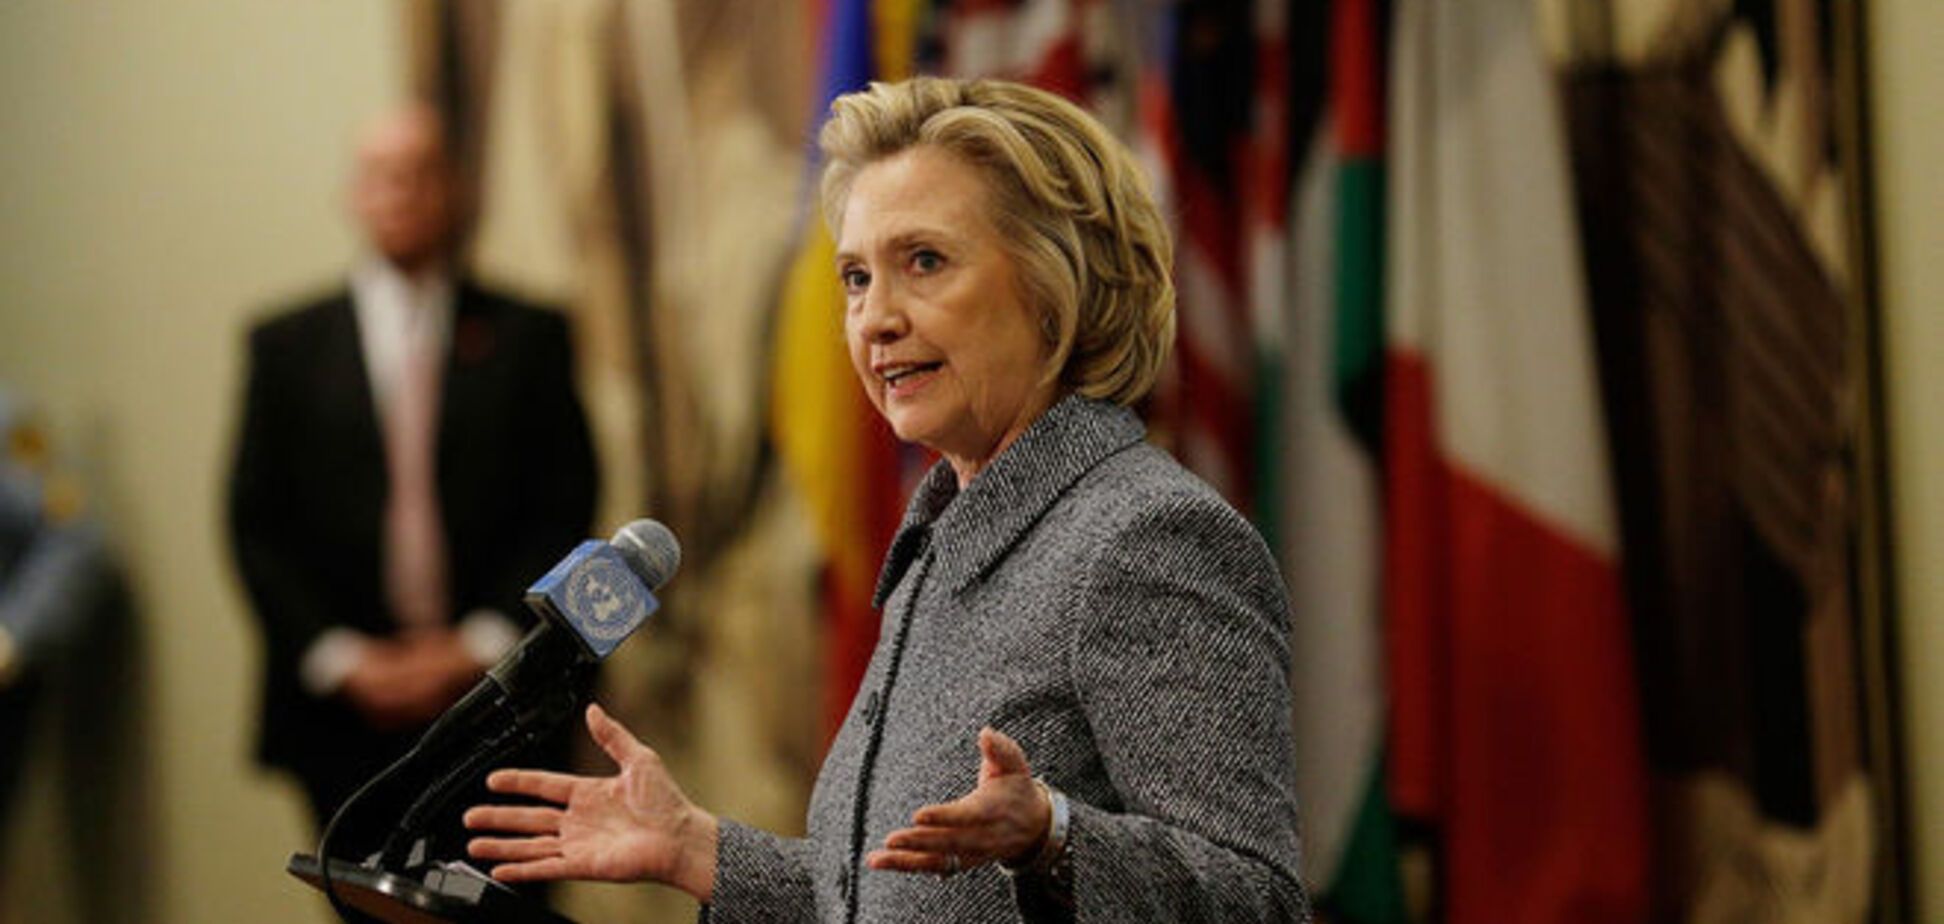 Хиллари Клинтон 12 апреля объявит о выдвижении в президенты США